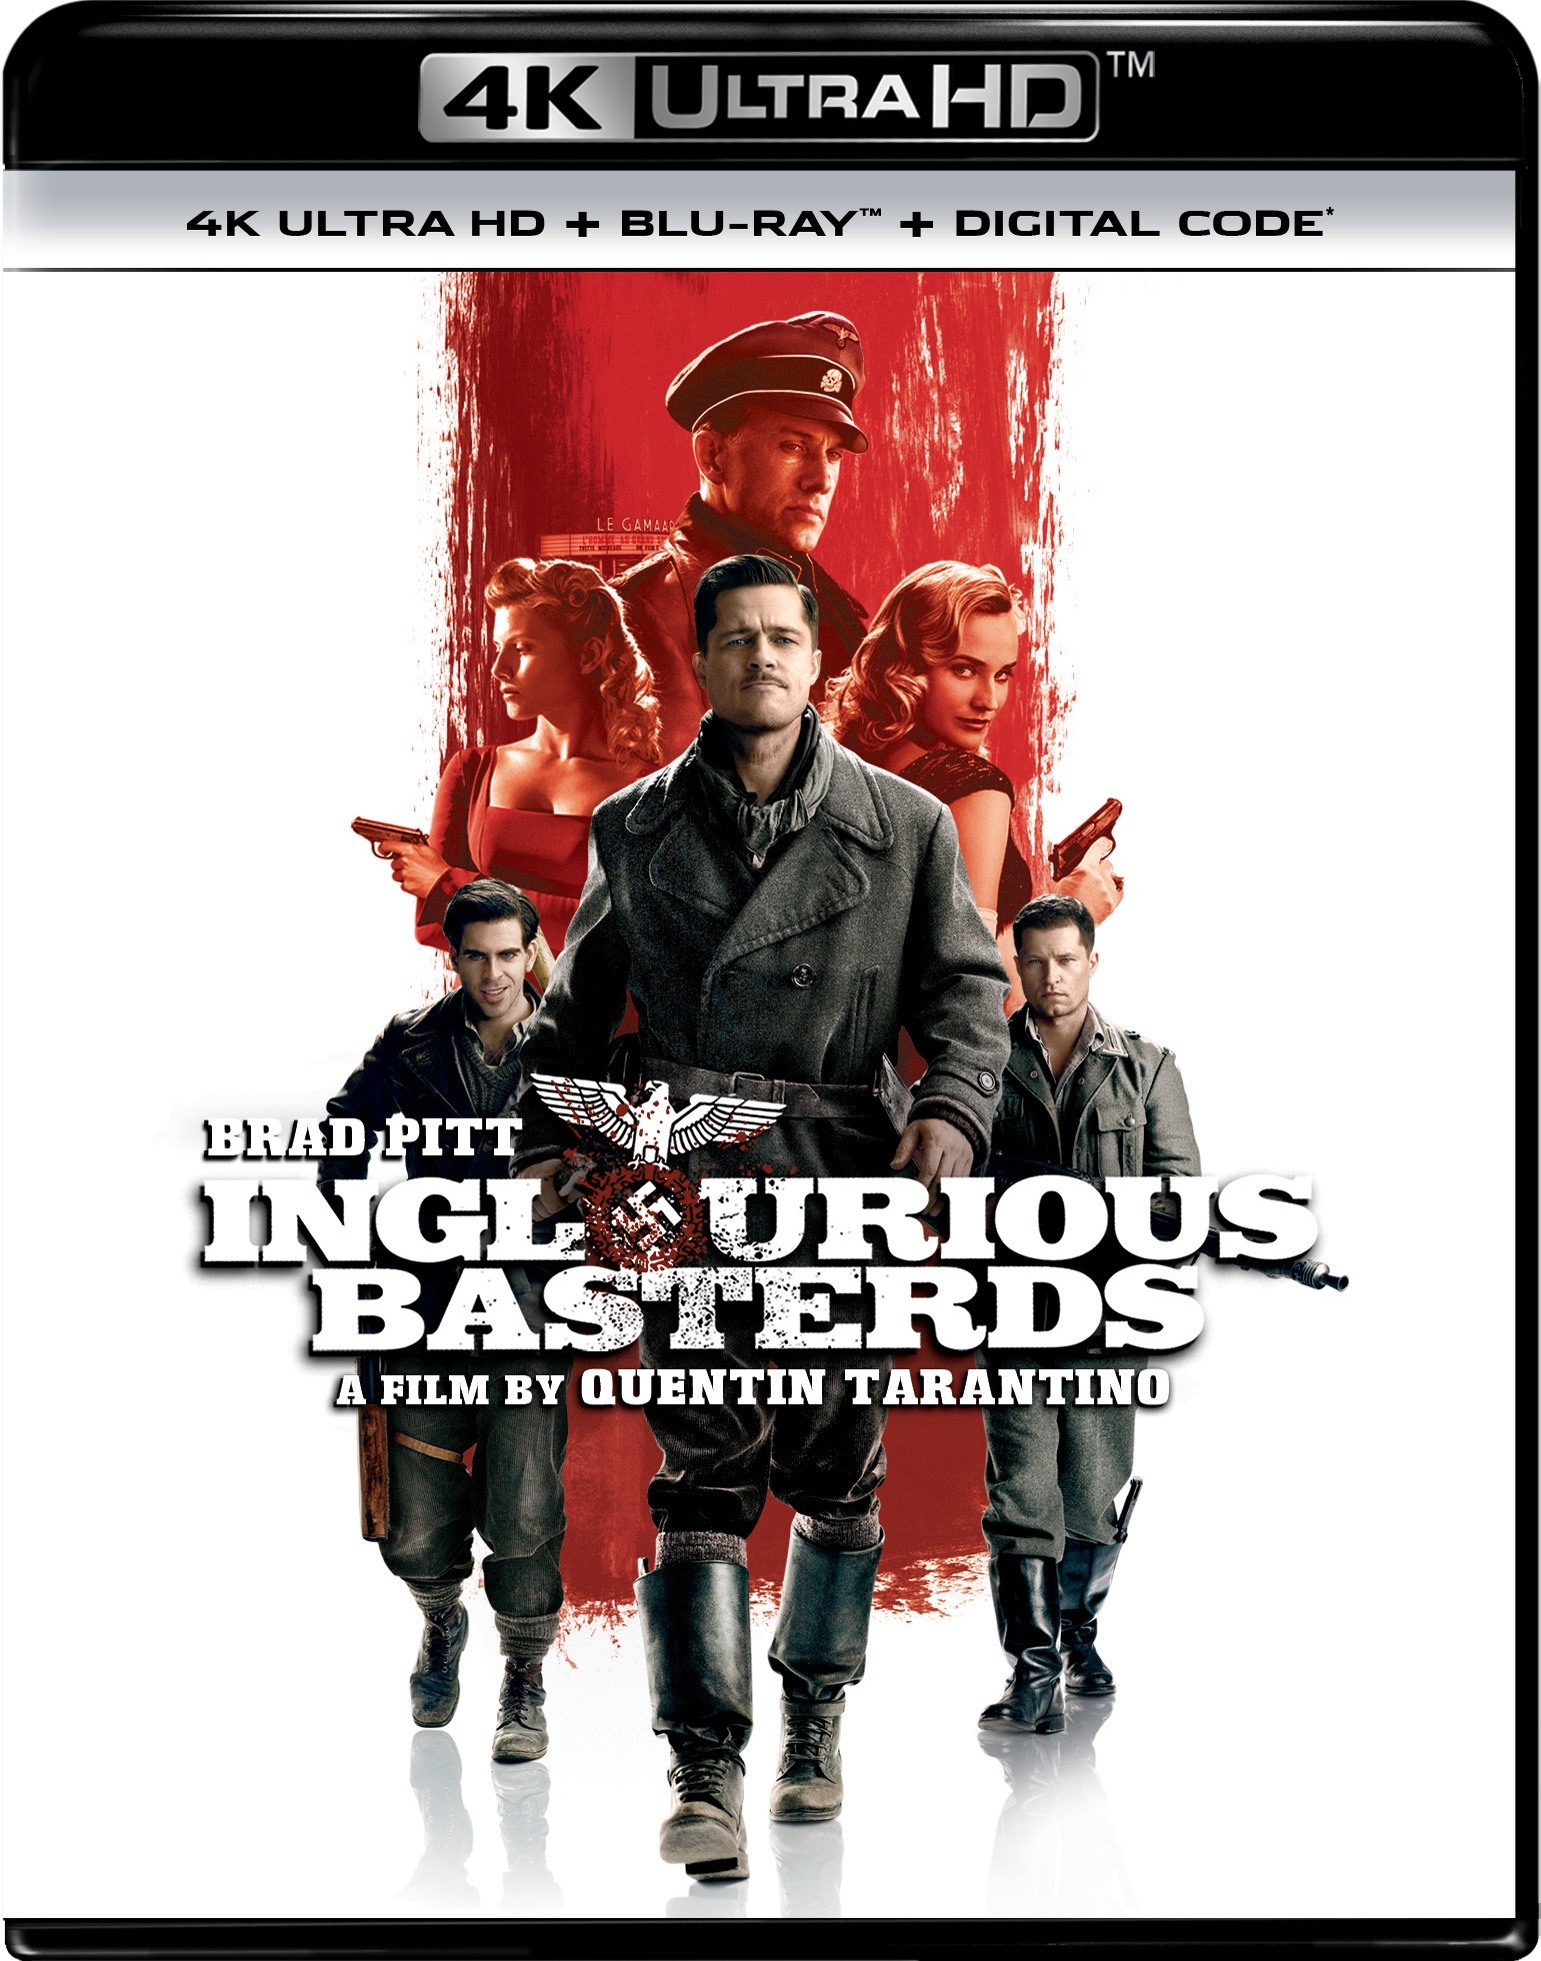 Inglourious Basterds (4K Ultra HD + Blu-ray) - UHD [ 2009 ]  - War Movies On 4K Ultra HD Blu-ray - Movies On GRUV